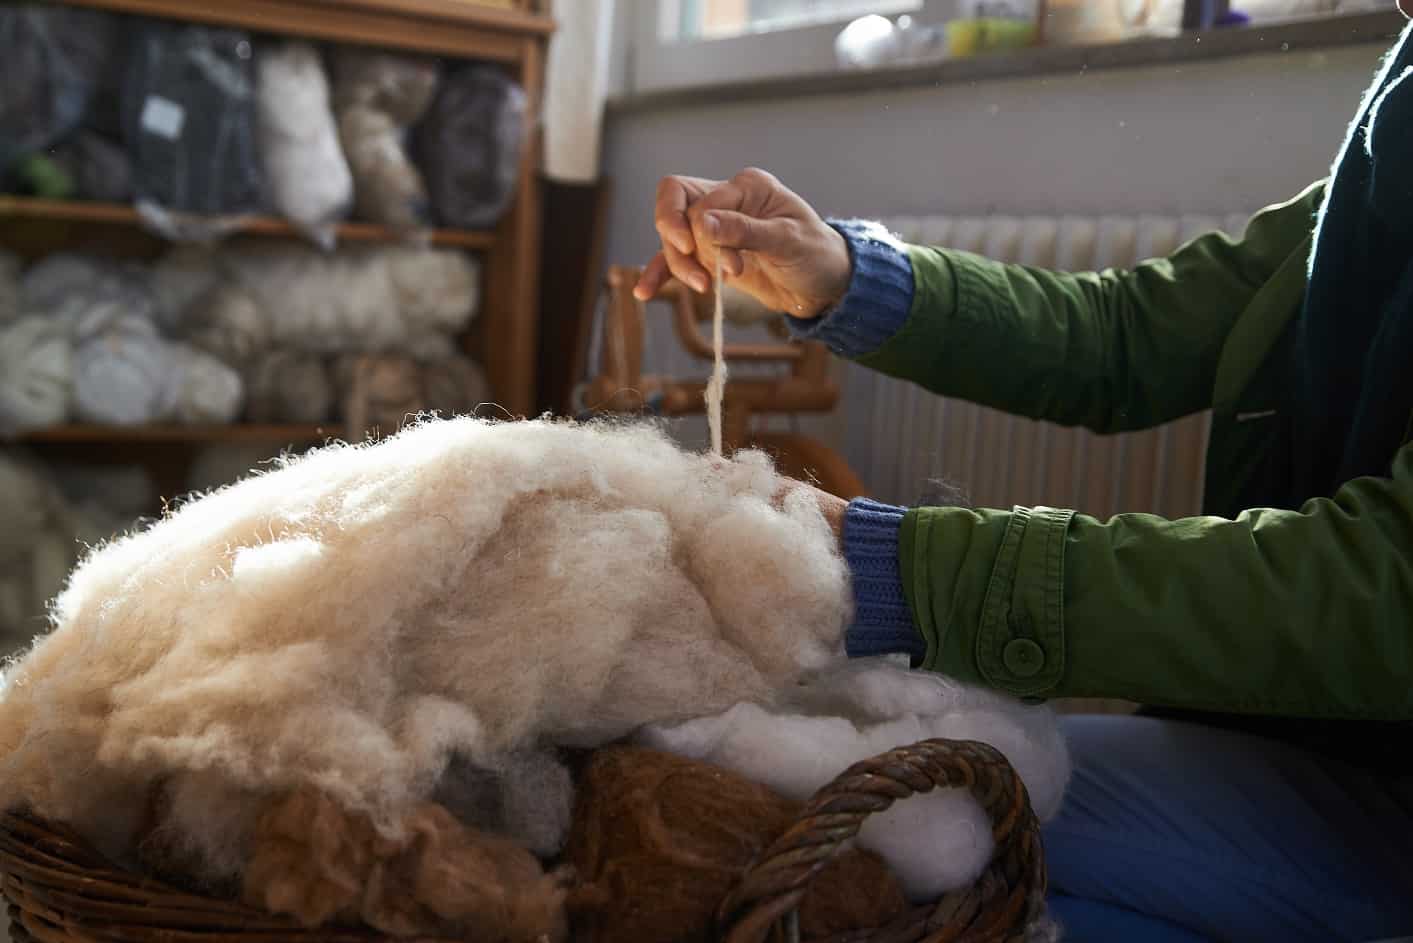 Yarn from natural sheep wool